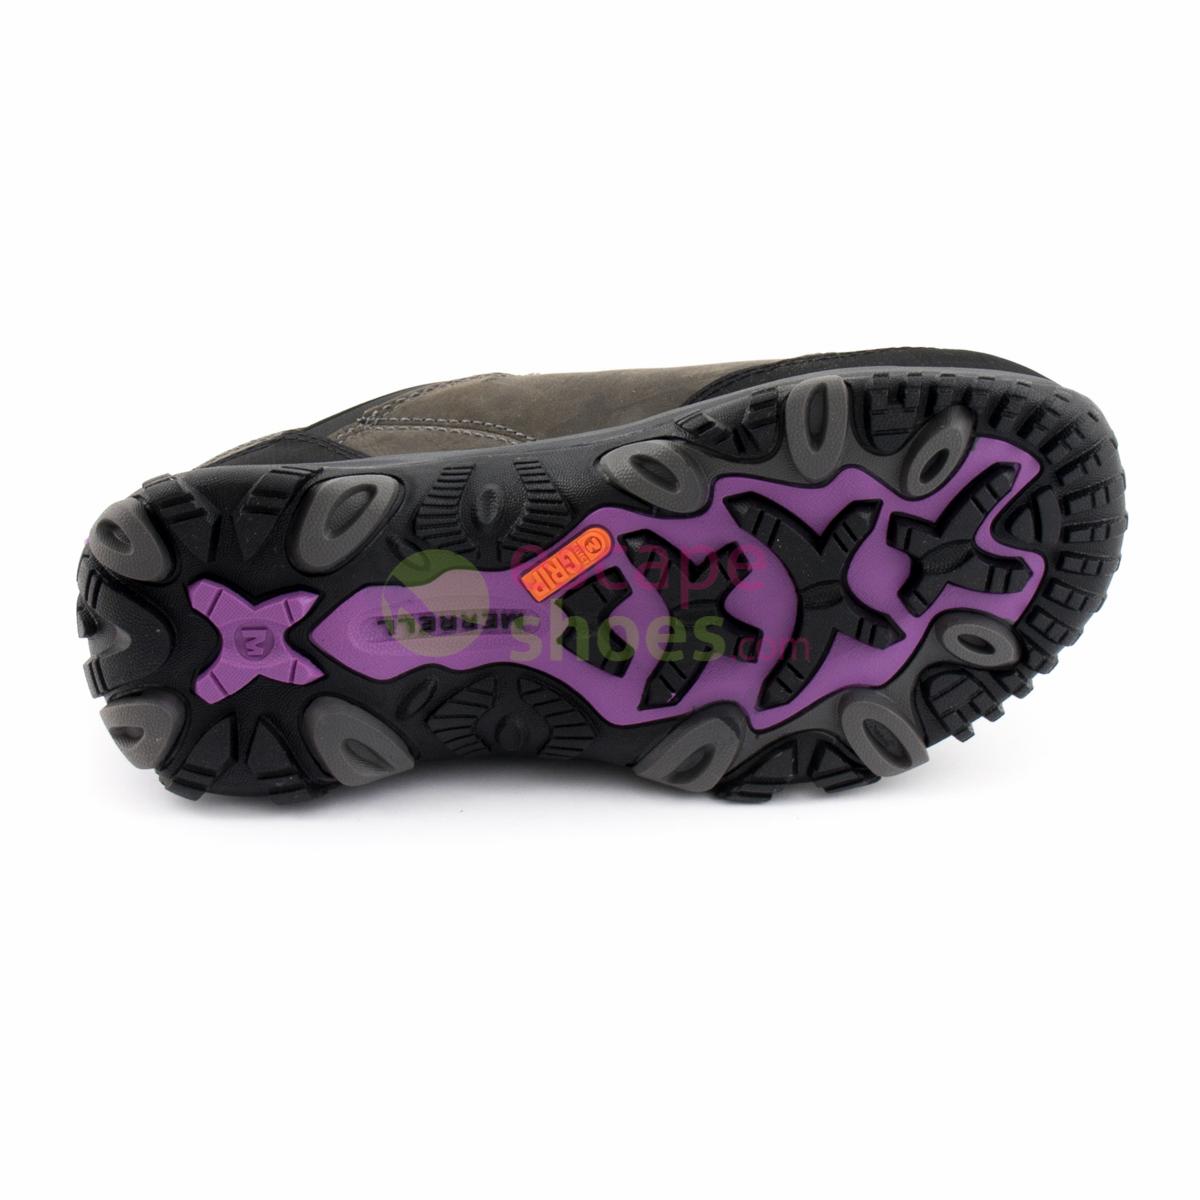 Merrell Amaranth Air Cushion Purple Sneaker Size 7.5